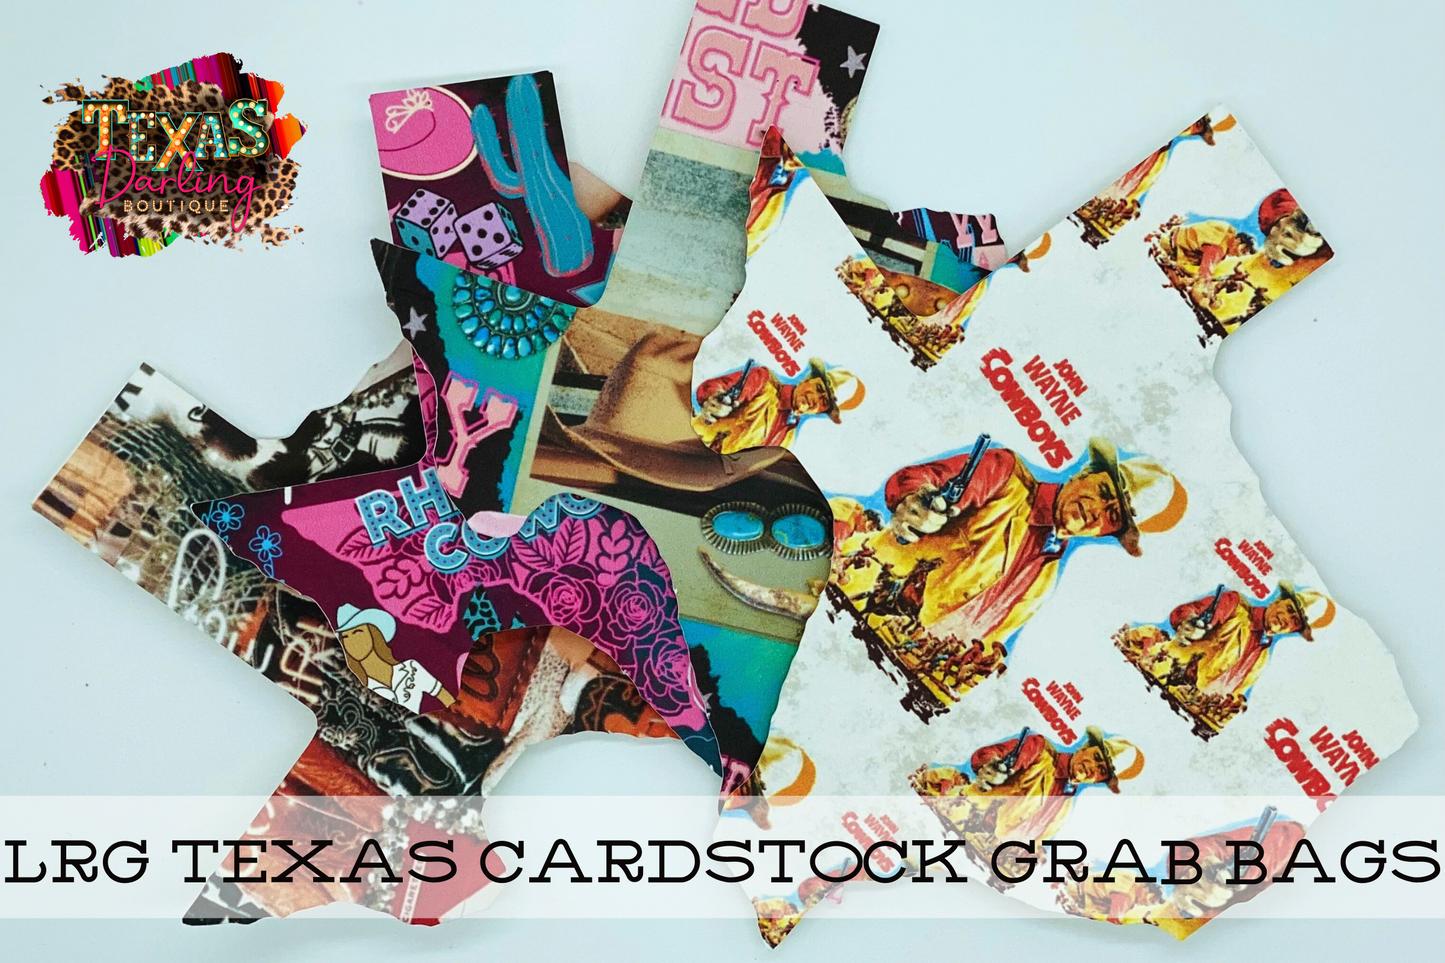 Large Texas Cardstock Grab Bags